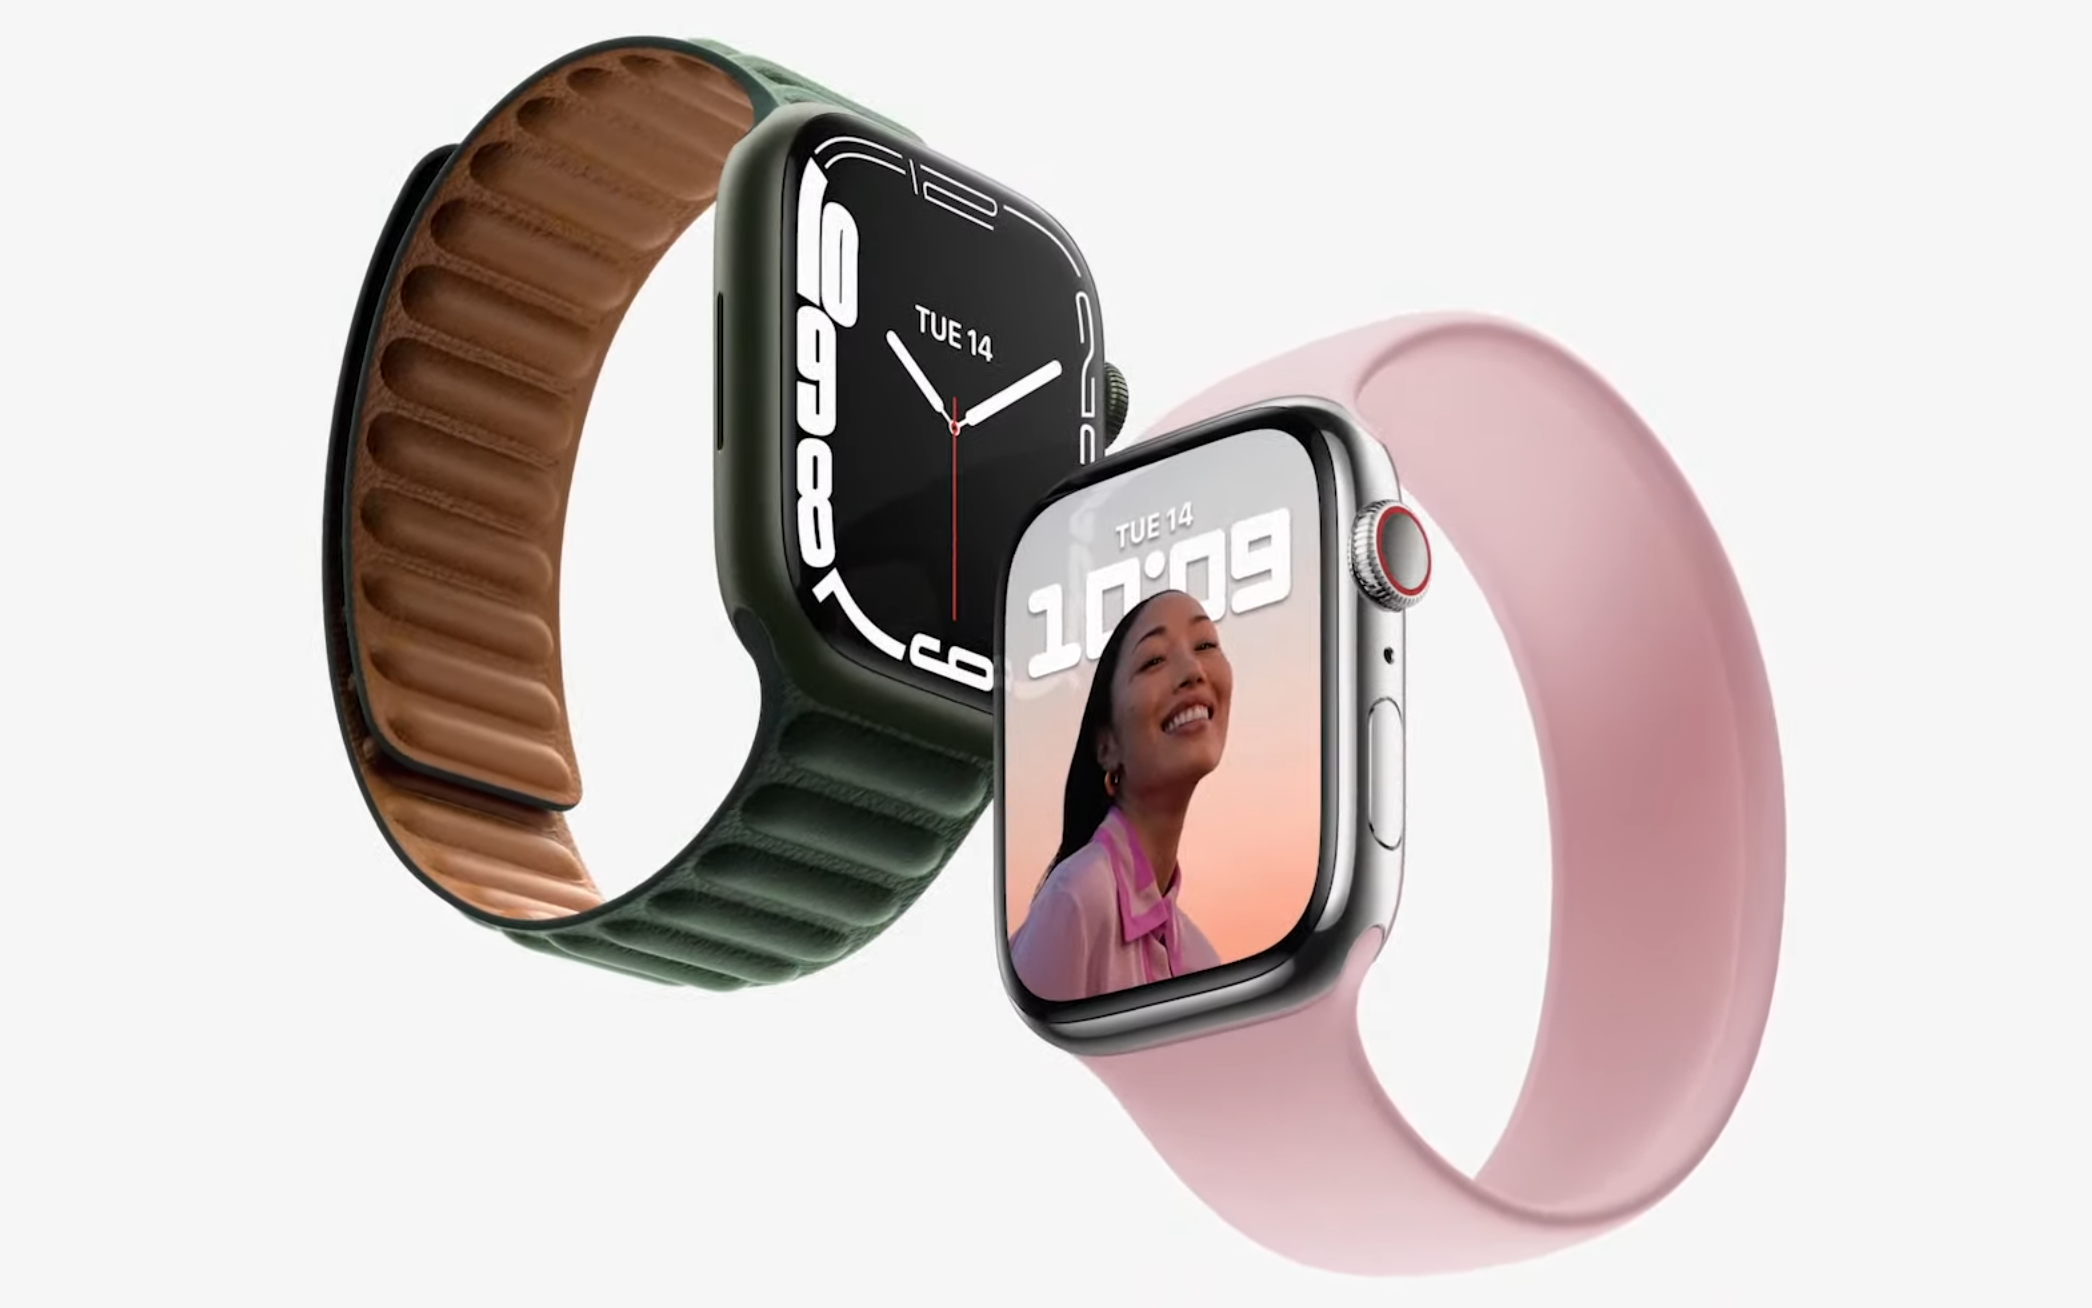 Nye Apple Watch-klokker dukket opp. Den var kanskje kveldens kjedeligste på maskinvaren i seg selv. Men en ting berget inntrykket litt for undertegnede - og kanskje for deg også - endelig kan den spore elsykling på en god måte. Det er det svært få smartklokker som kan - elektrisk assistert sykling er noe vi gjør ganske mye av i dette landet etter hvert.